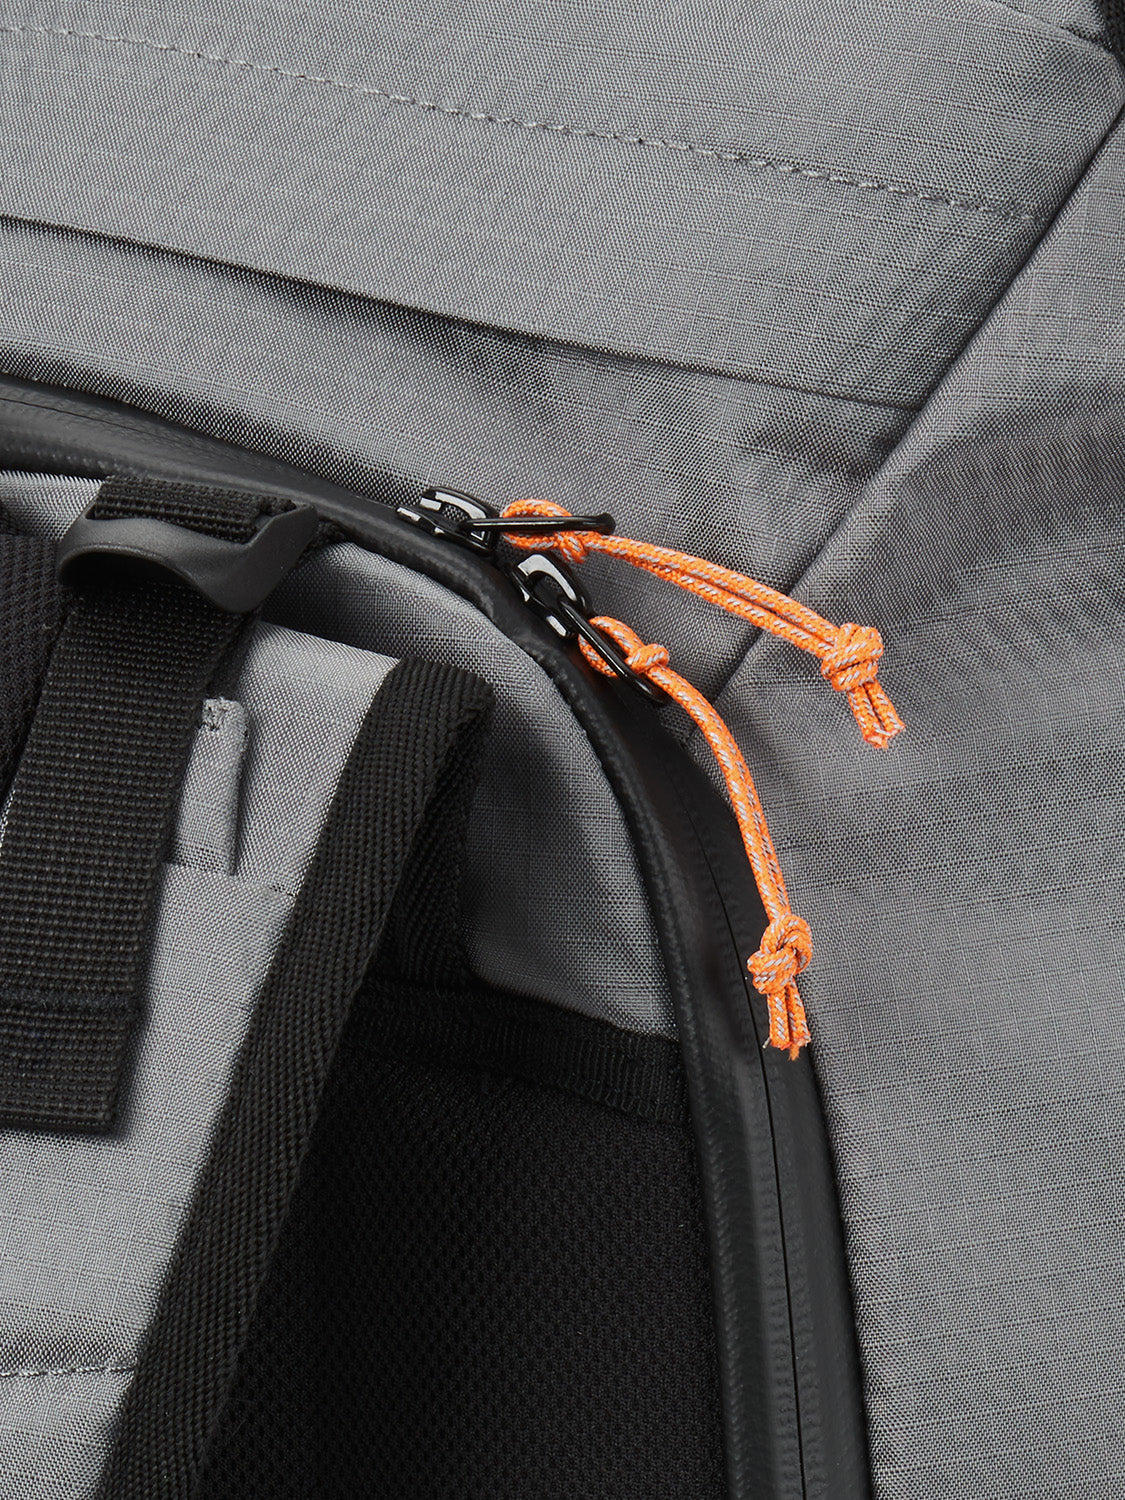 AEVOR-backpack-Travel-Pack-Proof-Sundown-material